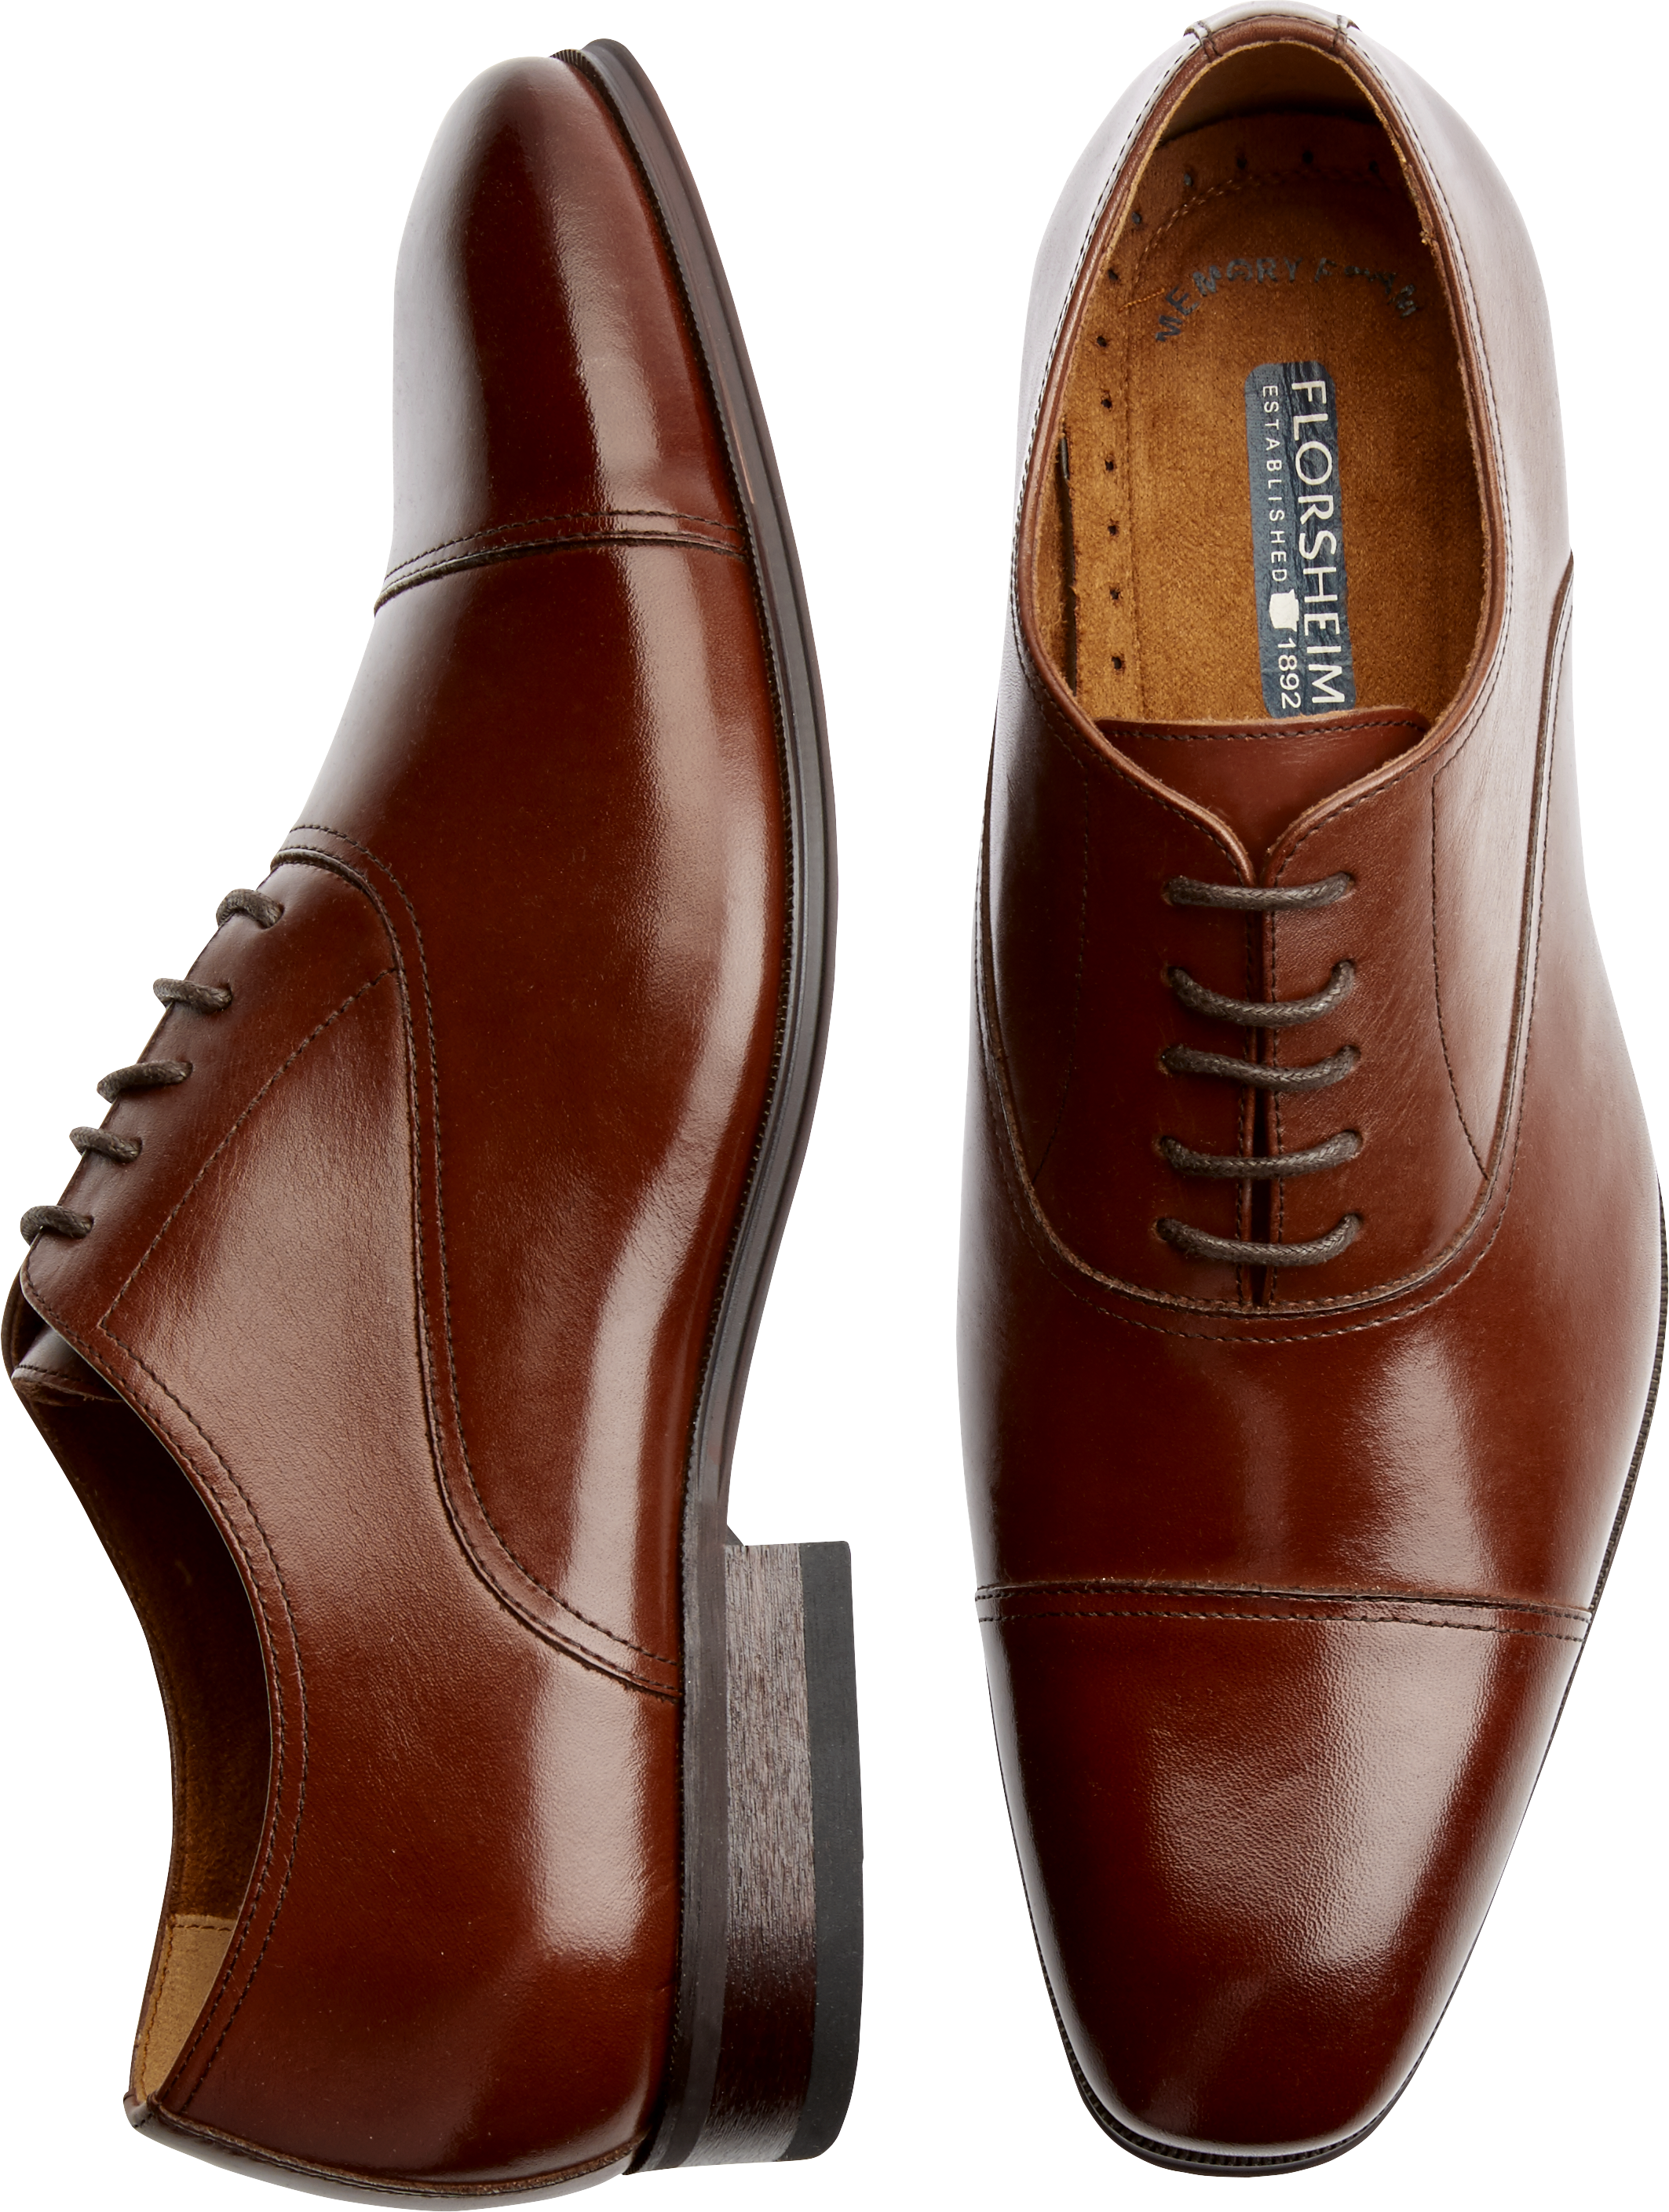 Florsheim Francisco Cap Toe Oxfords, Cognac - Men's Shoes | Men's Wearhouse